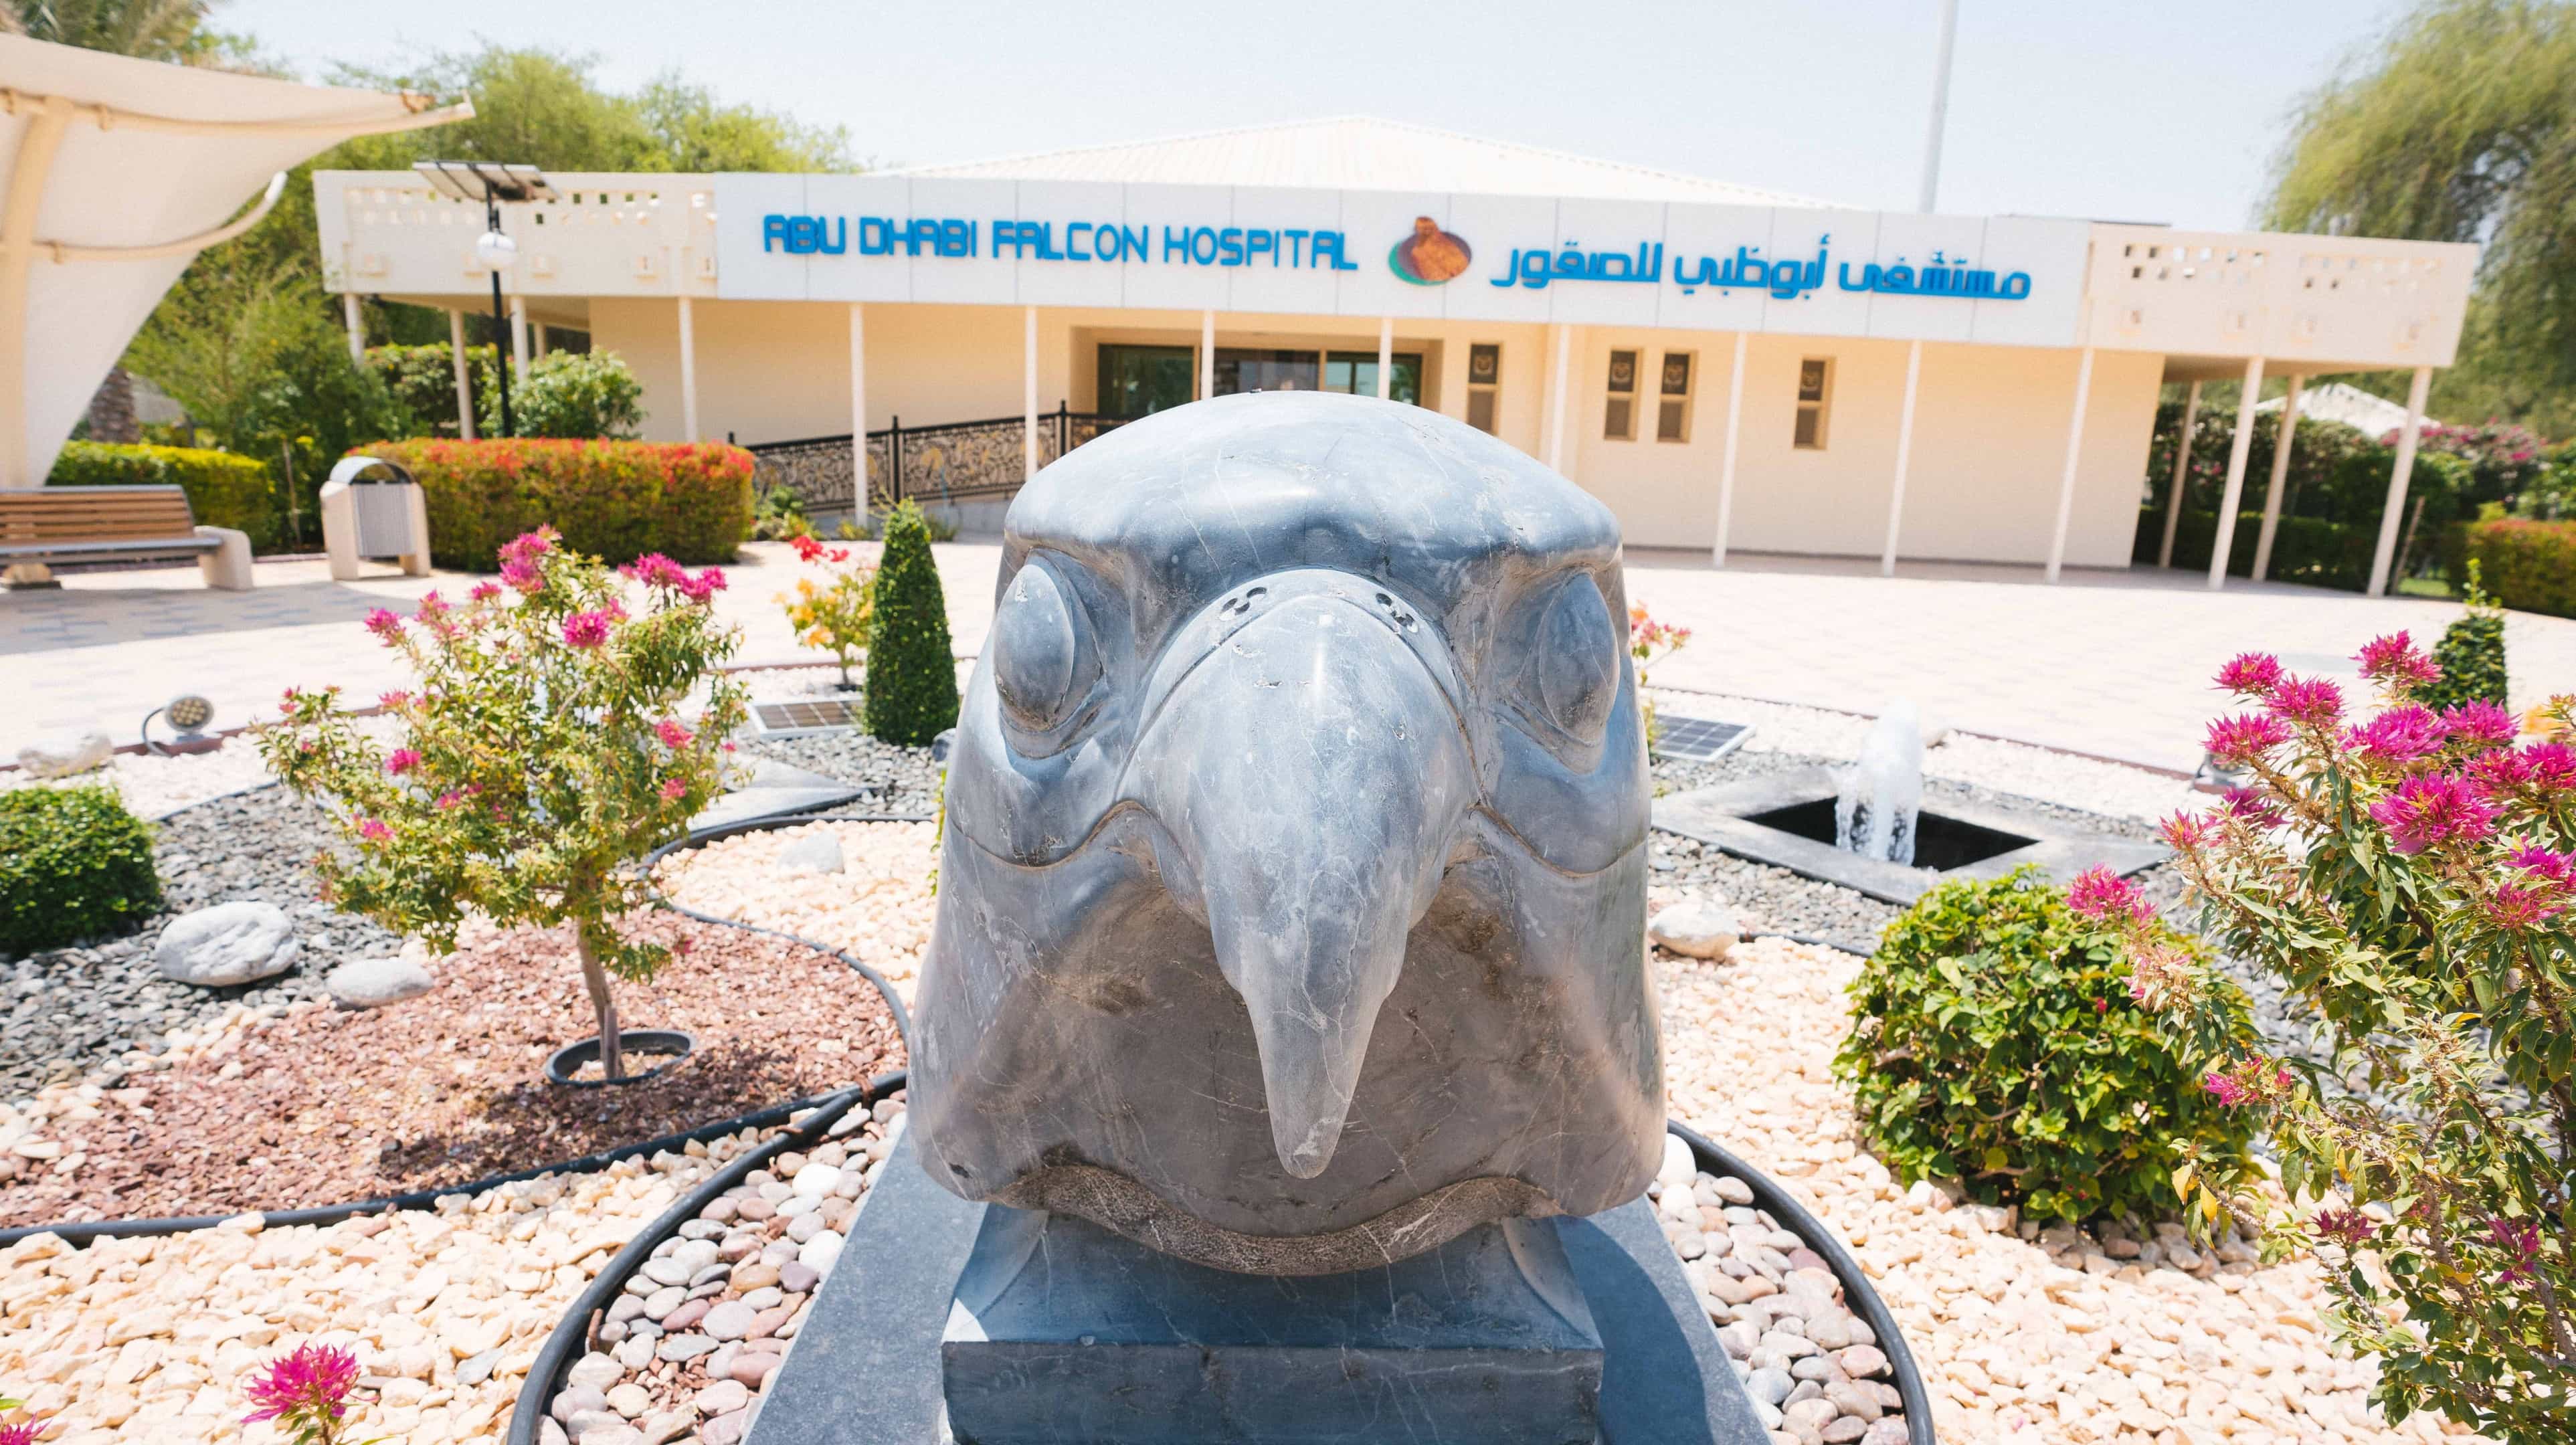 abu-dhabi-falcon-hospital